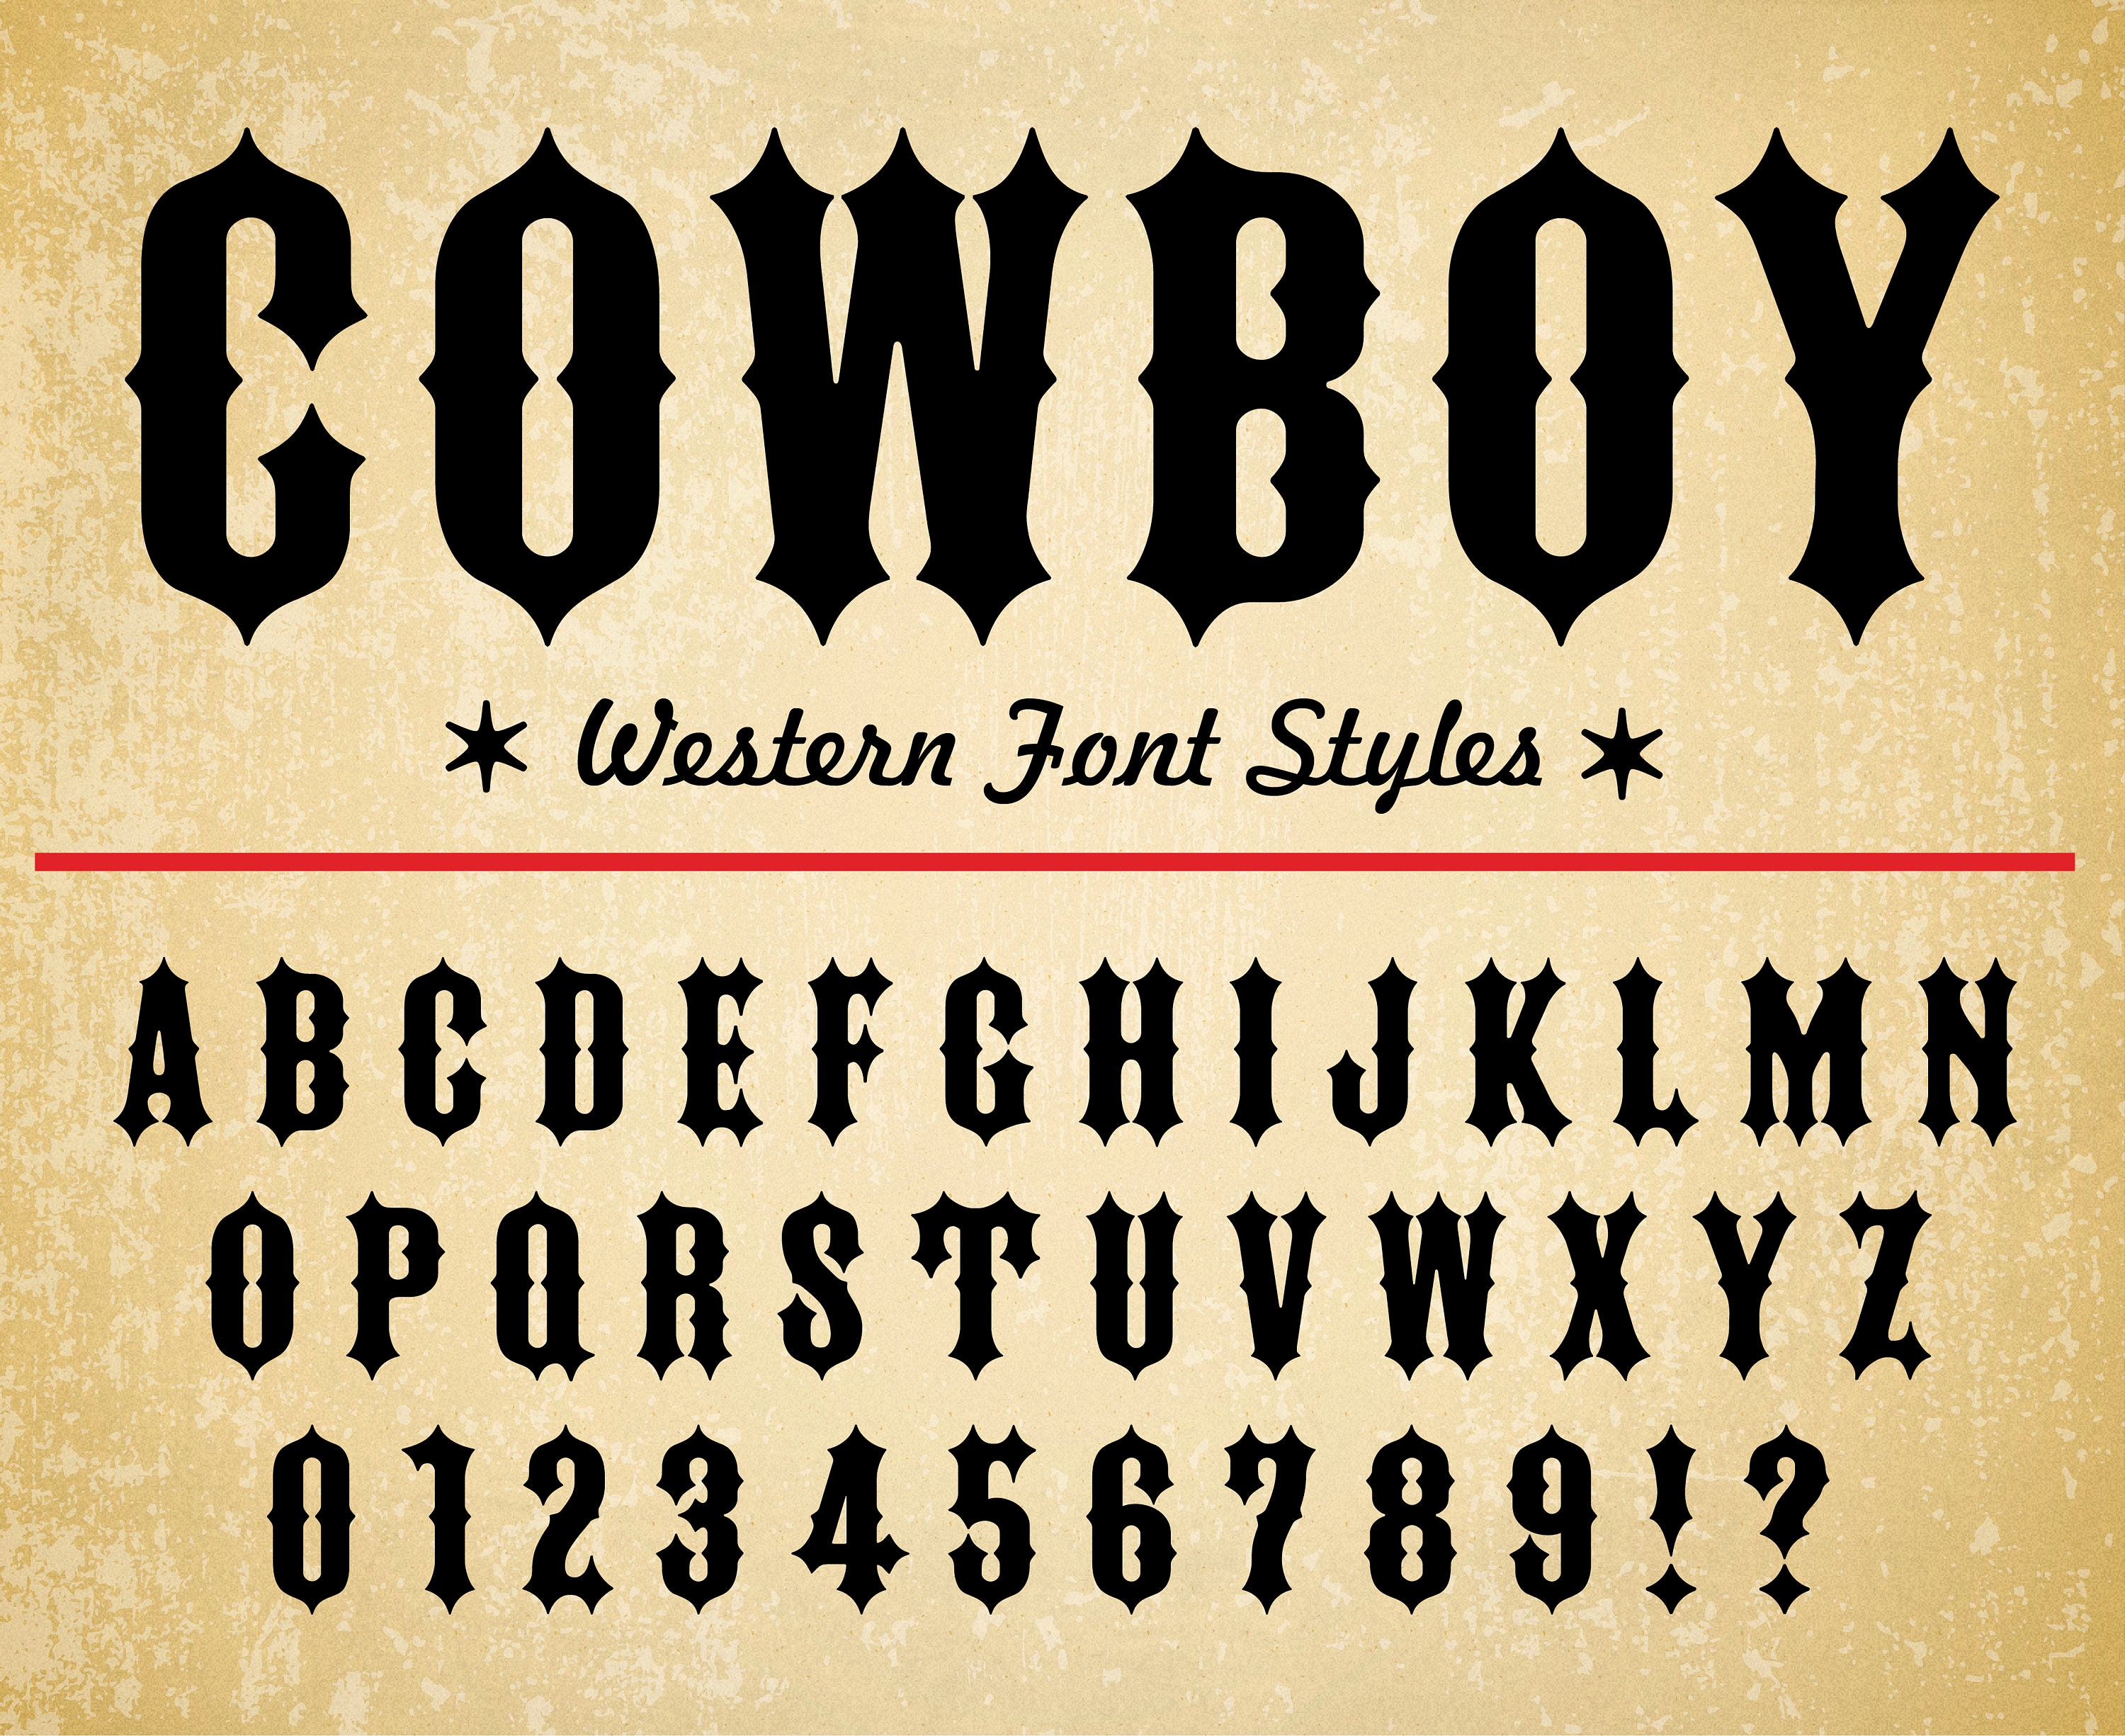 Cowboy Font Western Font Wild West Font Old West Font Western Font ...